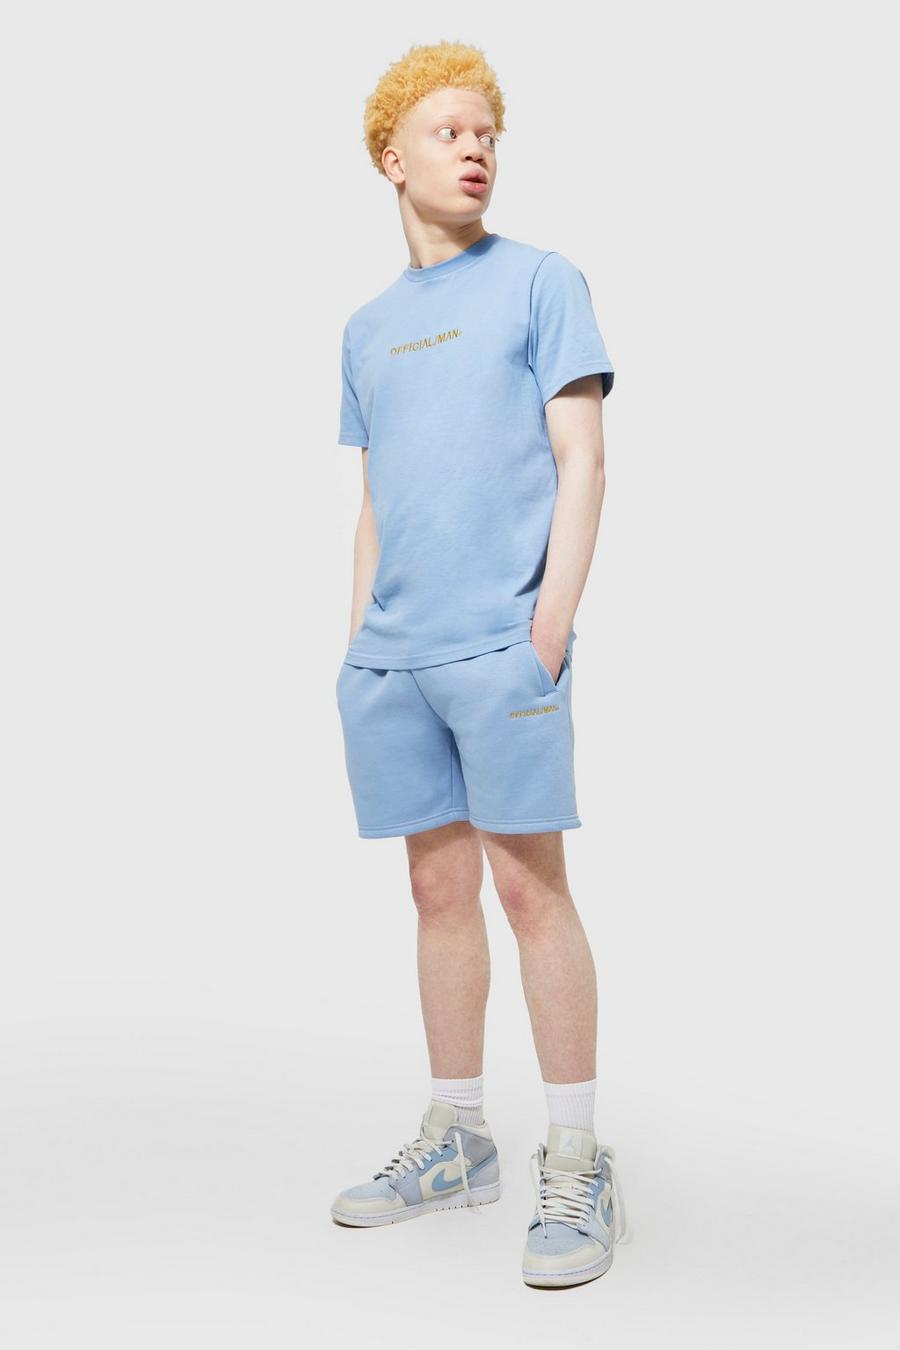 Light blue bleu Official Man Slim Fit T-Shirt En Shorts Set